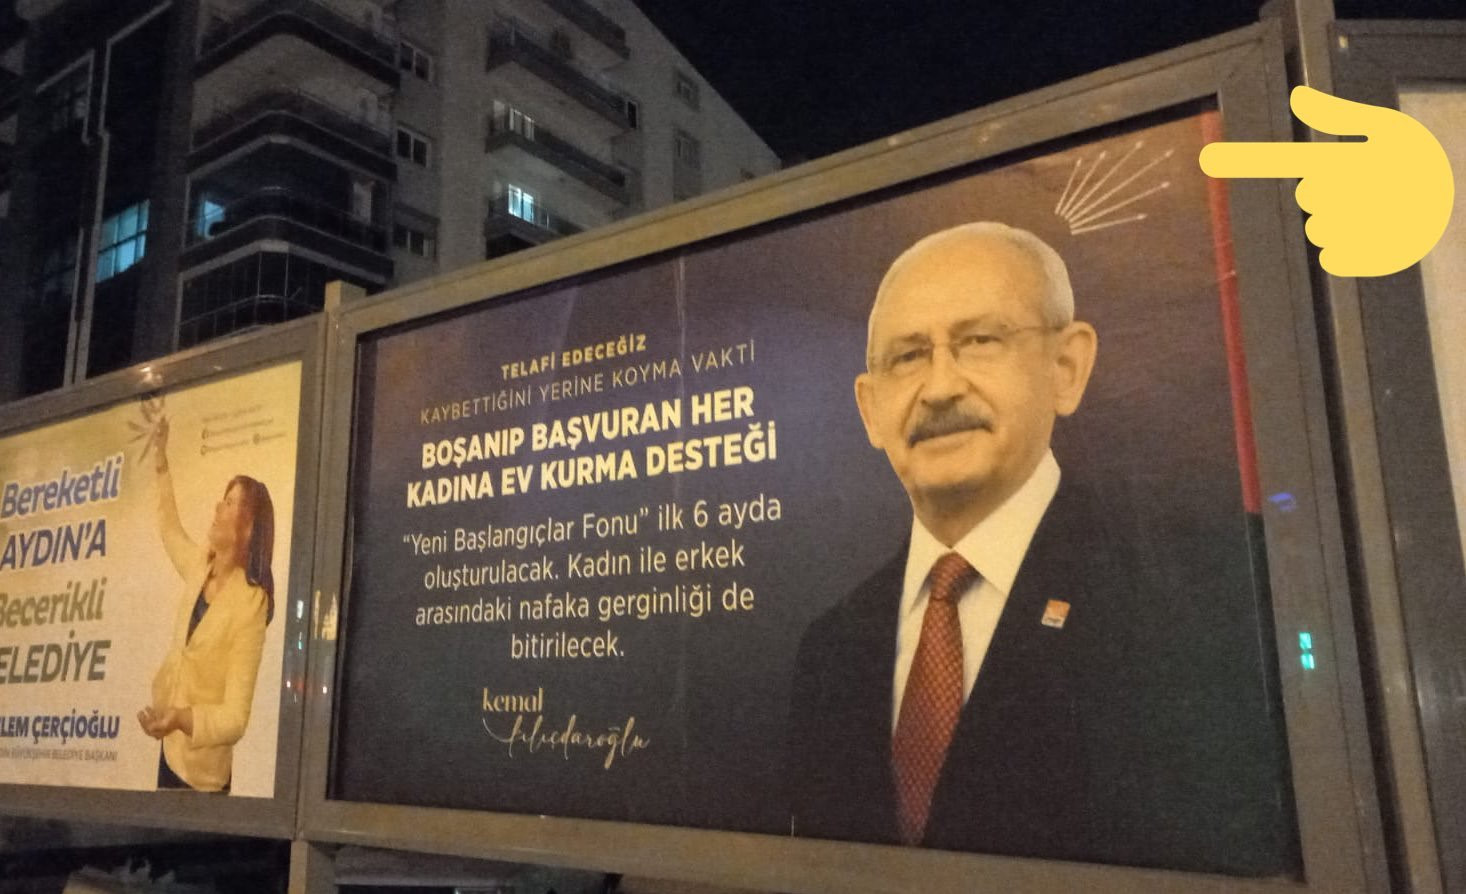 Cumhurbaşkanı Erdoğan'ın ziyareti sonrası reklam panolarına Kılıçdaroğlu'na ait afişler asıldı.